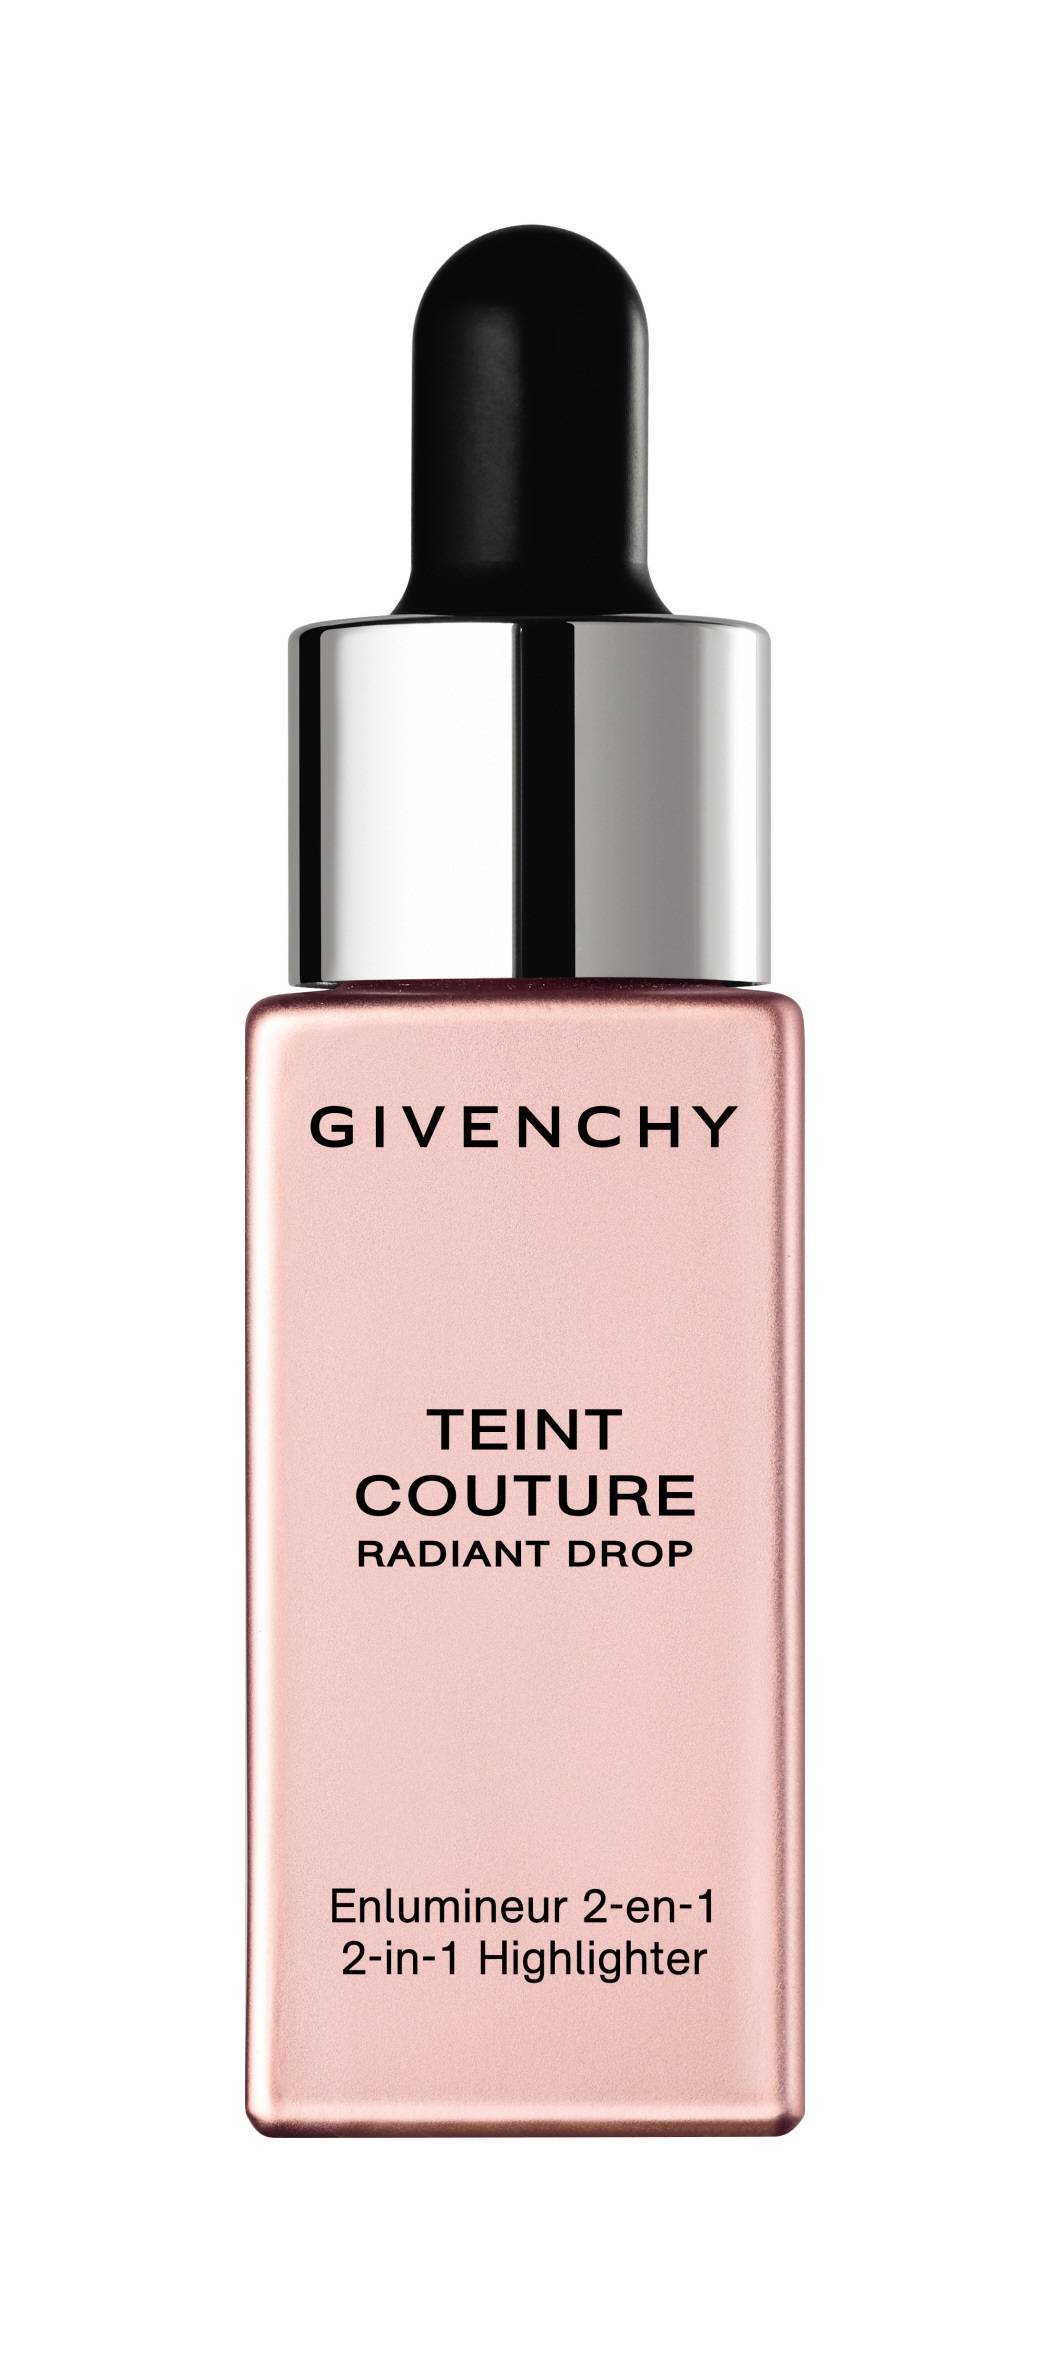 Płynny rozświetlacz Teint Couture, Givenchy 215 zł